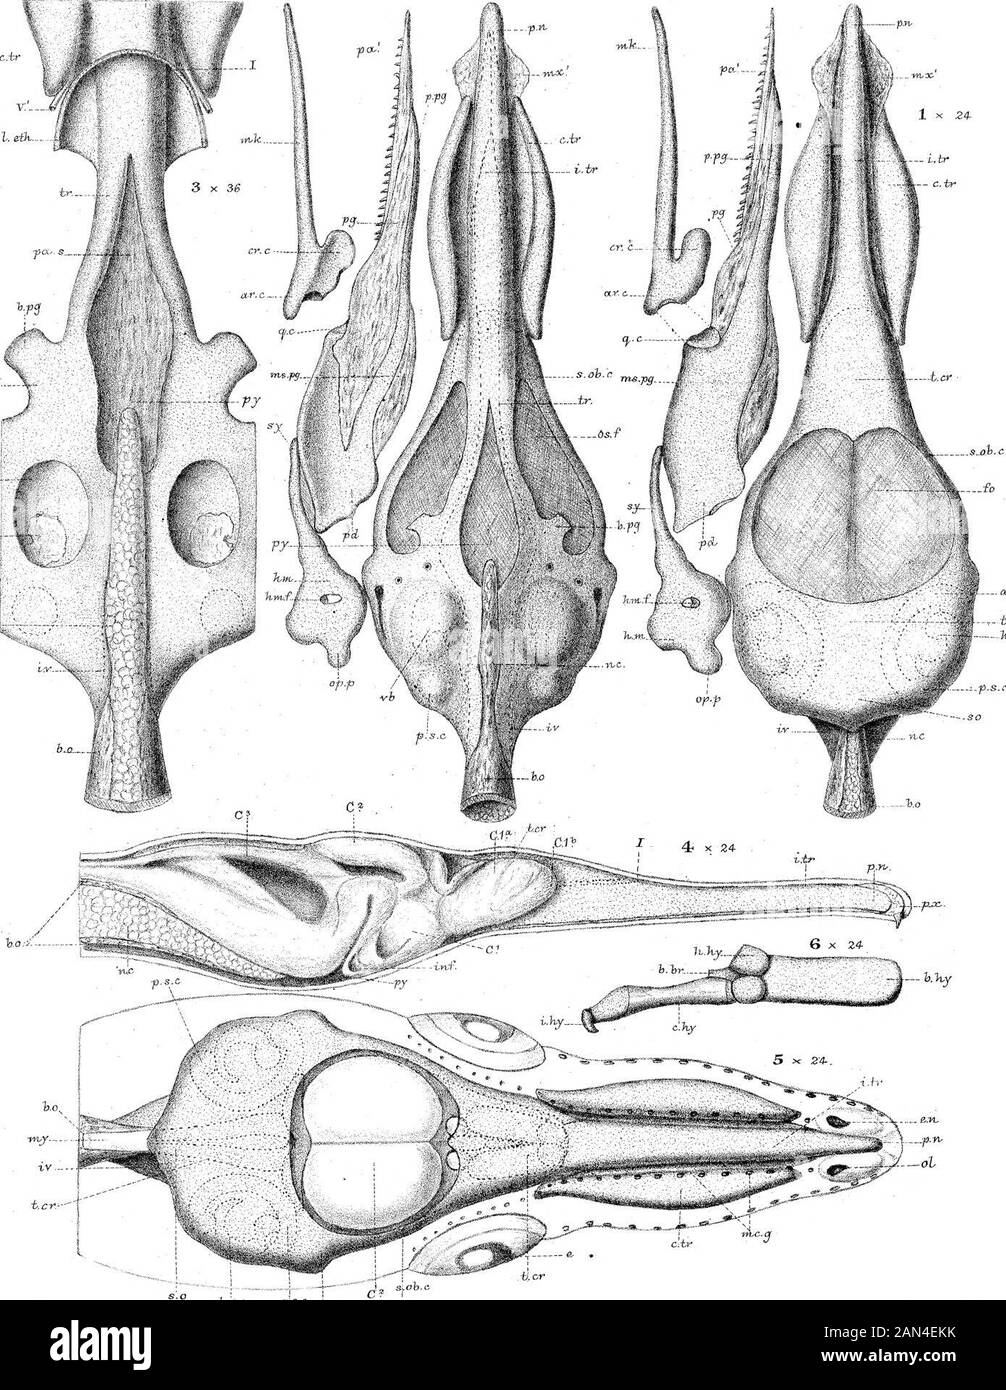 Sullo sviluppo del cranio in Lepidaosteus osseo . ll. C.br h-.br ^ X .7 M^7..^ ;, 7. N.&gt;M7 XX.. H.hr XV W:KP.& WJT.P. dfil.ad.BBI.M7P. Parker Hth. LEPIDOSTEITS h.. %re st  N ew.i-M ocw. & C ° :i .rii.-p Pour Jeer. I.tr 2 x 24- PhiLTrwns. 1882 .Piastra 32. C.ir V.- r HJ& o4. l£l K- G- ^m.- c(»s.c. N. di serie: OH WKP (3jeL aAmoitibM, *K P&lt;xr ke:r Kik. H^^&.o sp-o -L^t , i,.„ ? JLT X. ,.X/ v/ iw* *JL Jt-™i v.,*? *^«? WES-t Egli wjaioaa. ^5* C ? imj3 - Ixrker, X x 27 2 x 27-i.tr-. *T?-.. I(W^-; •--x p.o&. ,»»-* Foto Stock